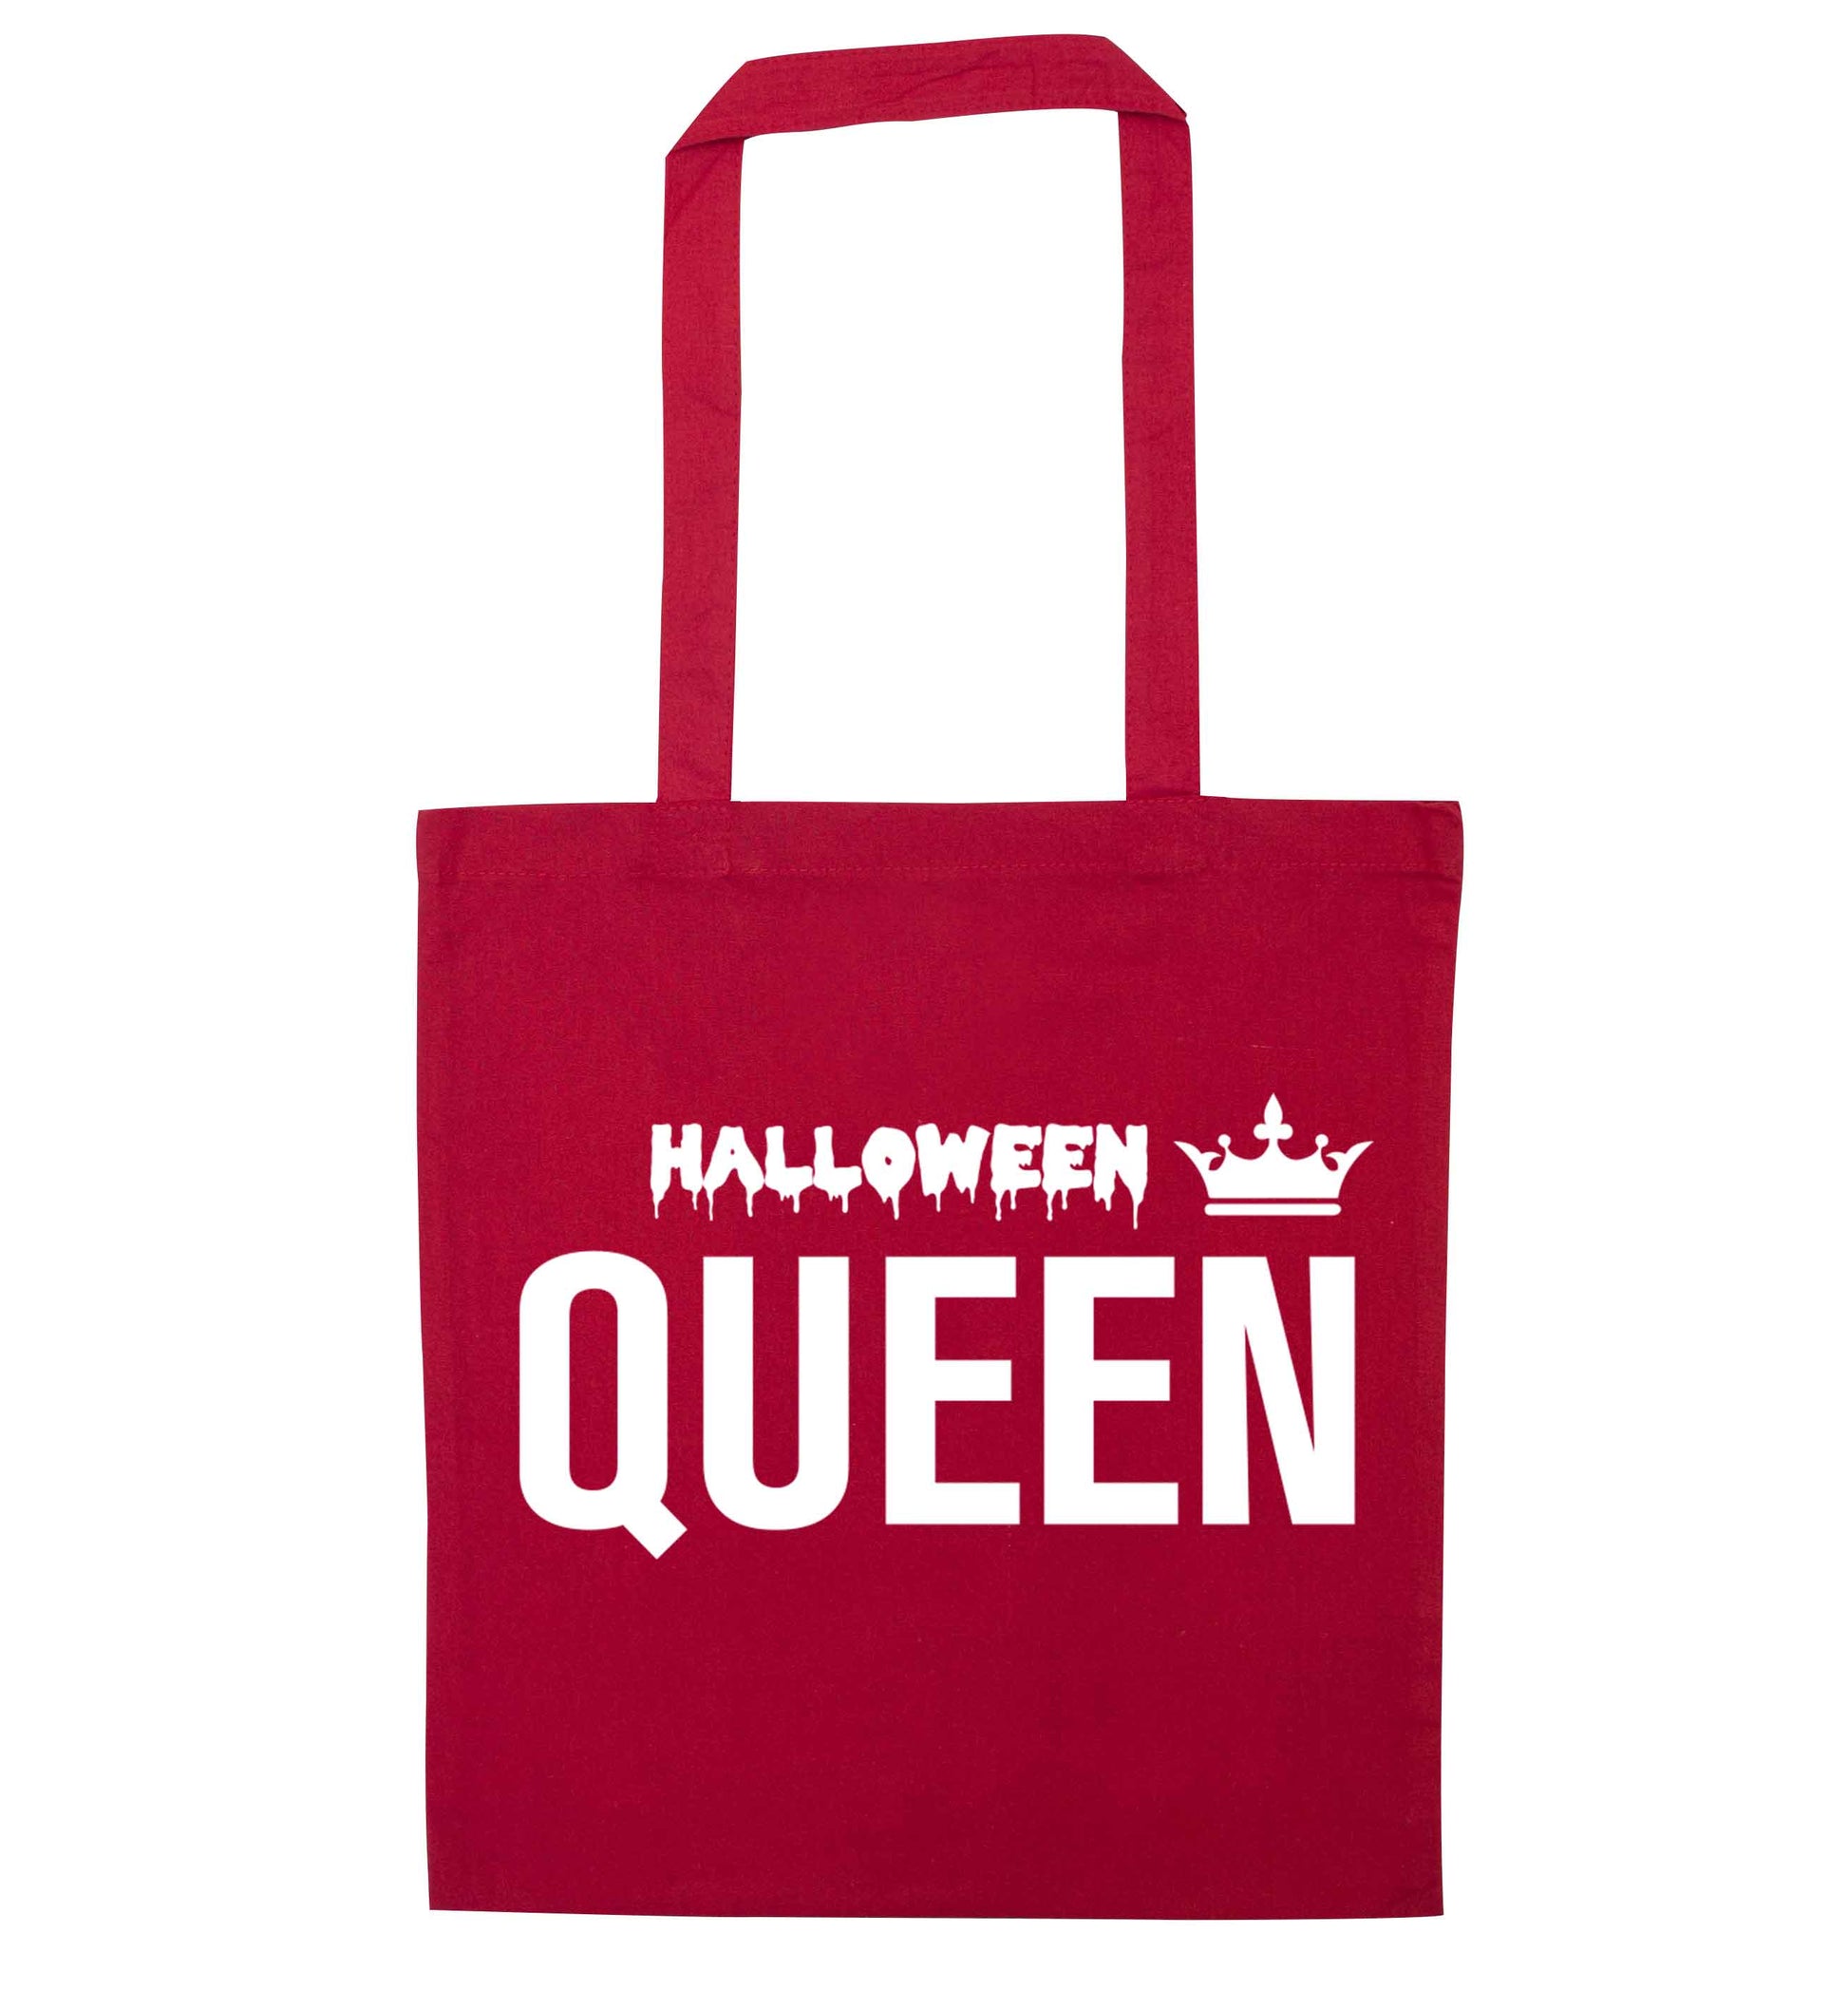 Halloween queen red tote bag